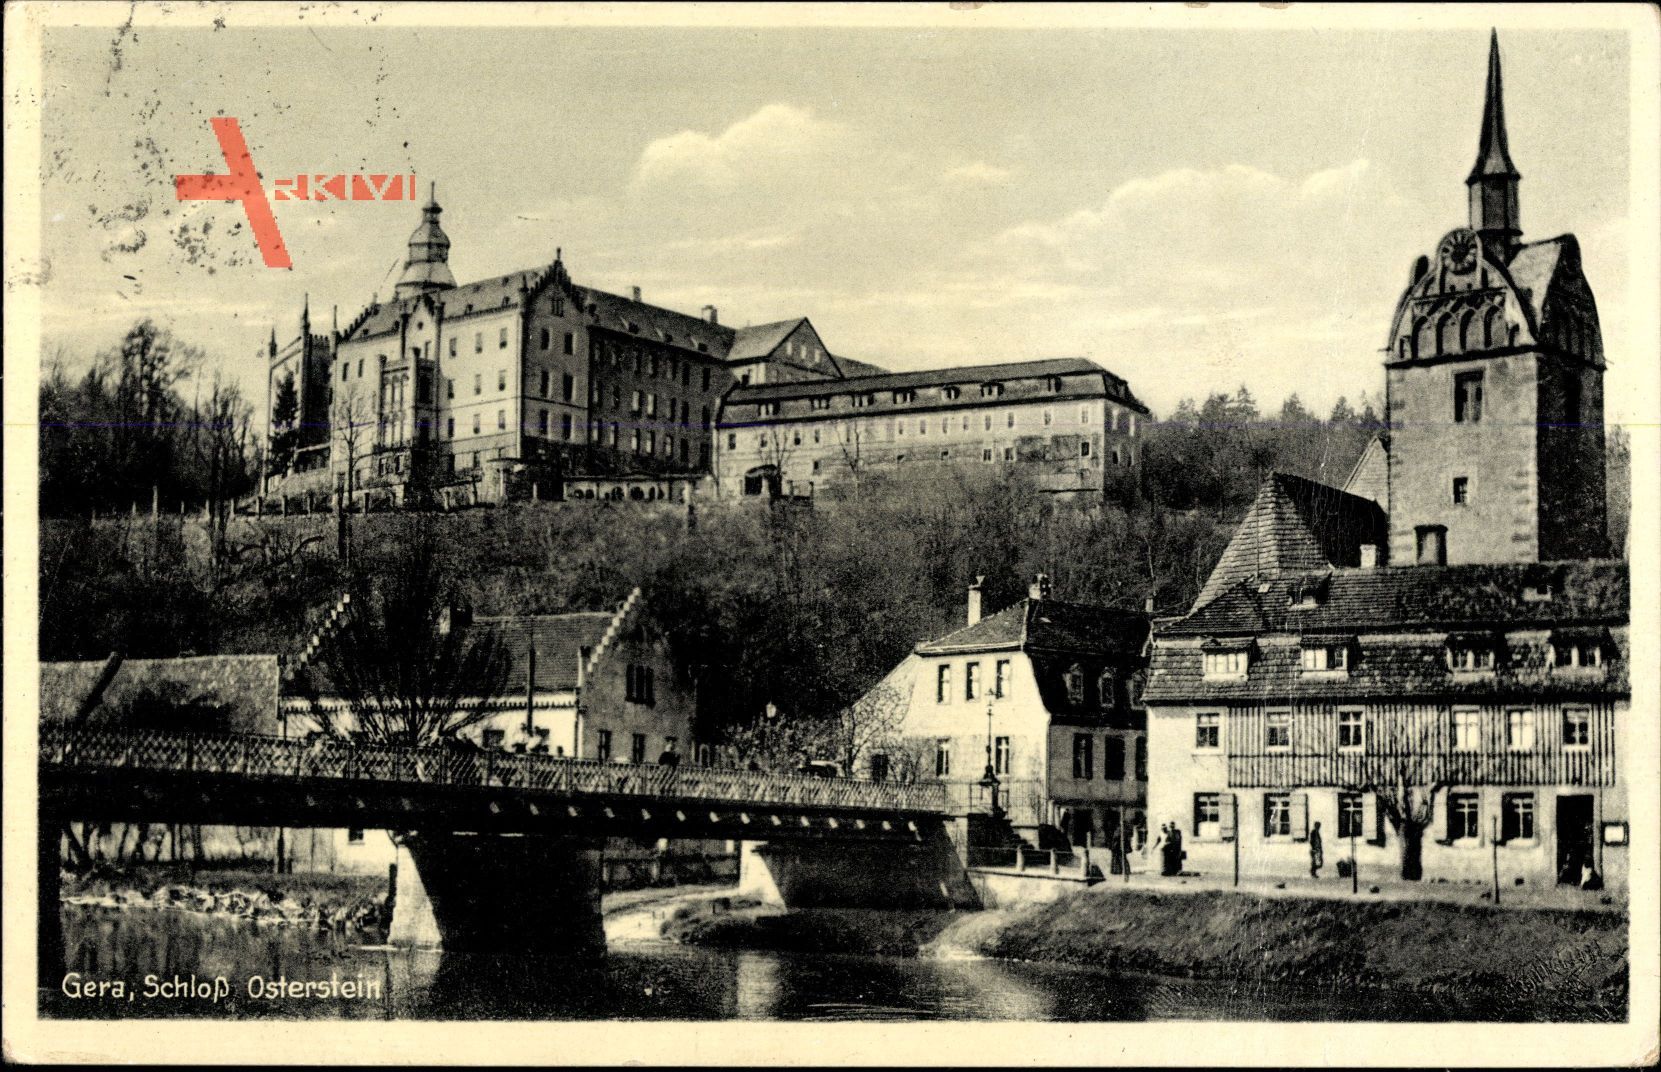 Gera in Thüringen, Schloss Osterstein, Brücke, Kirche, Häuser